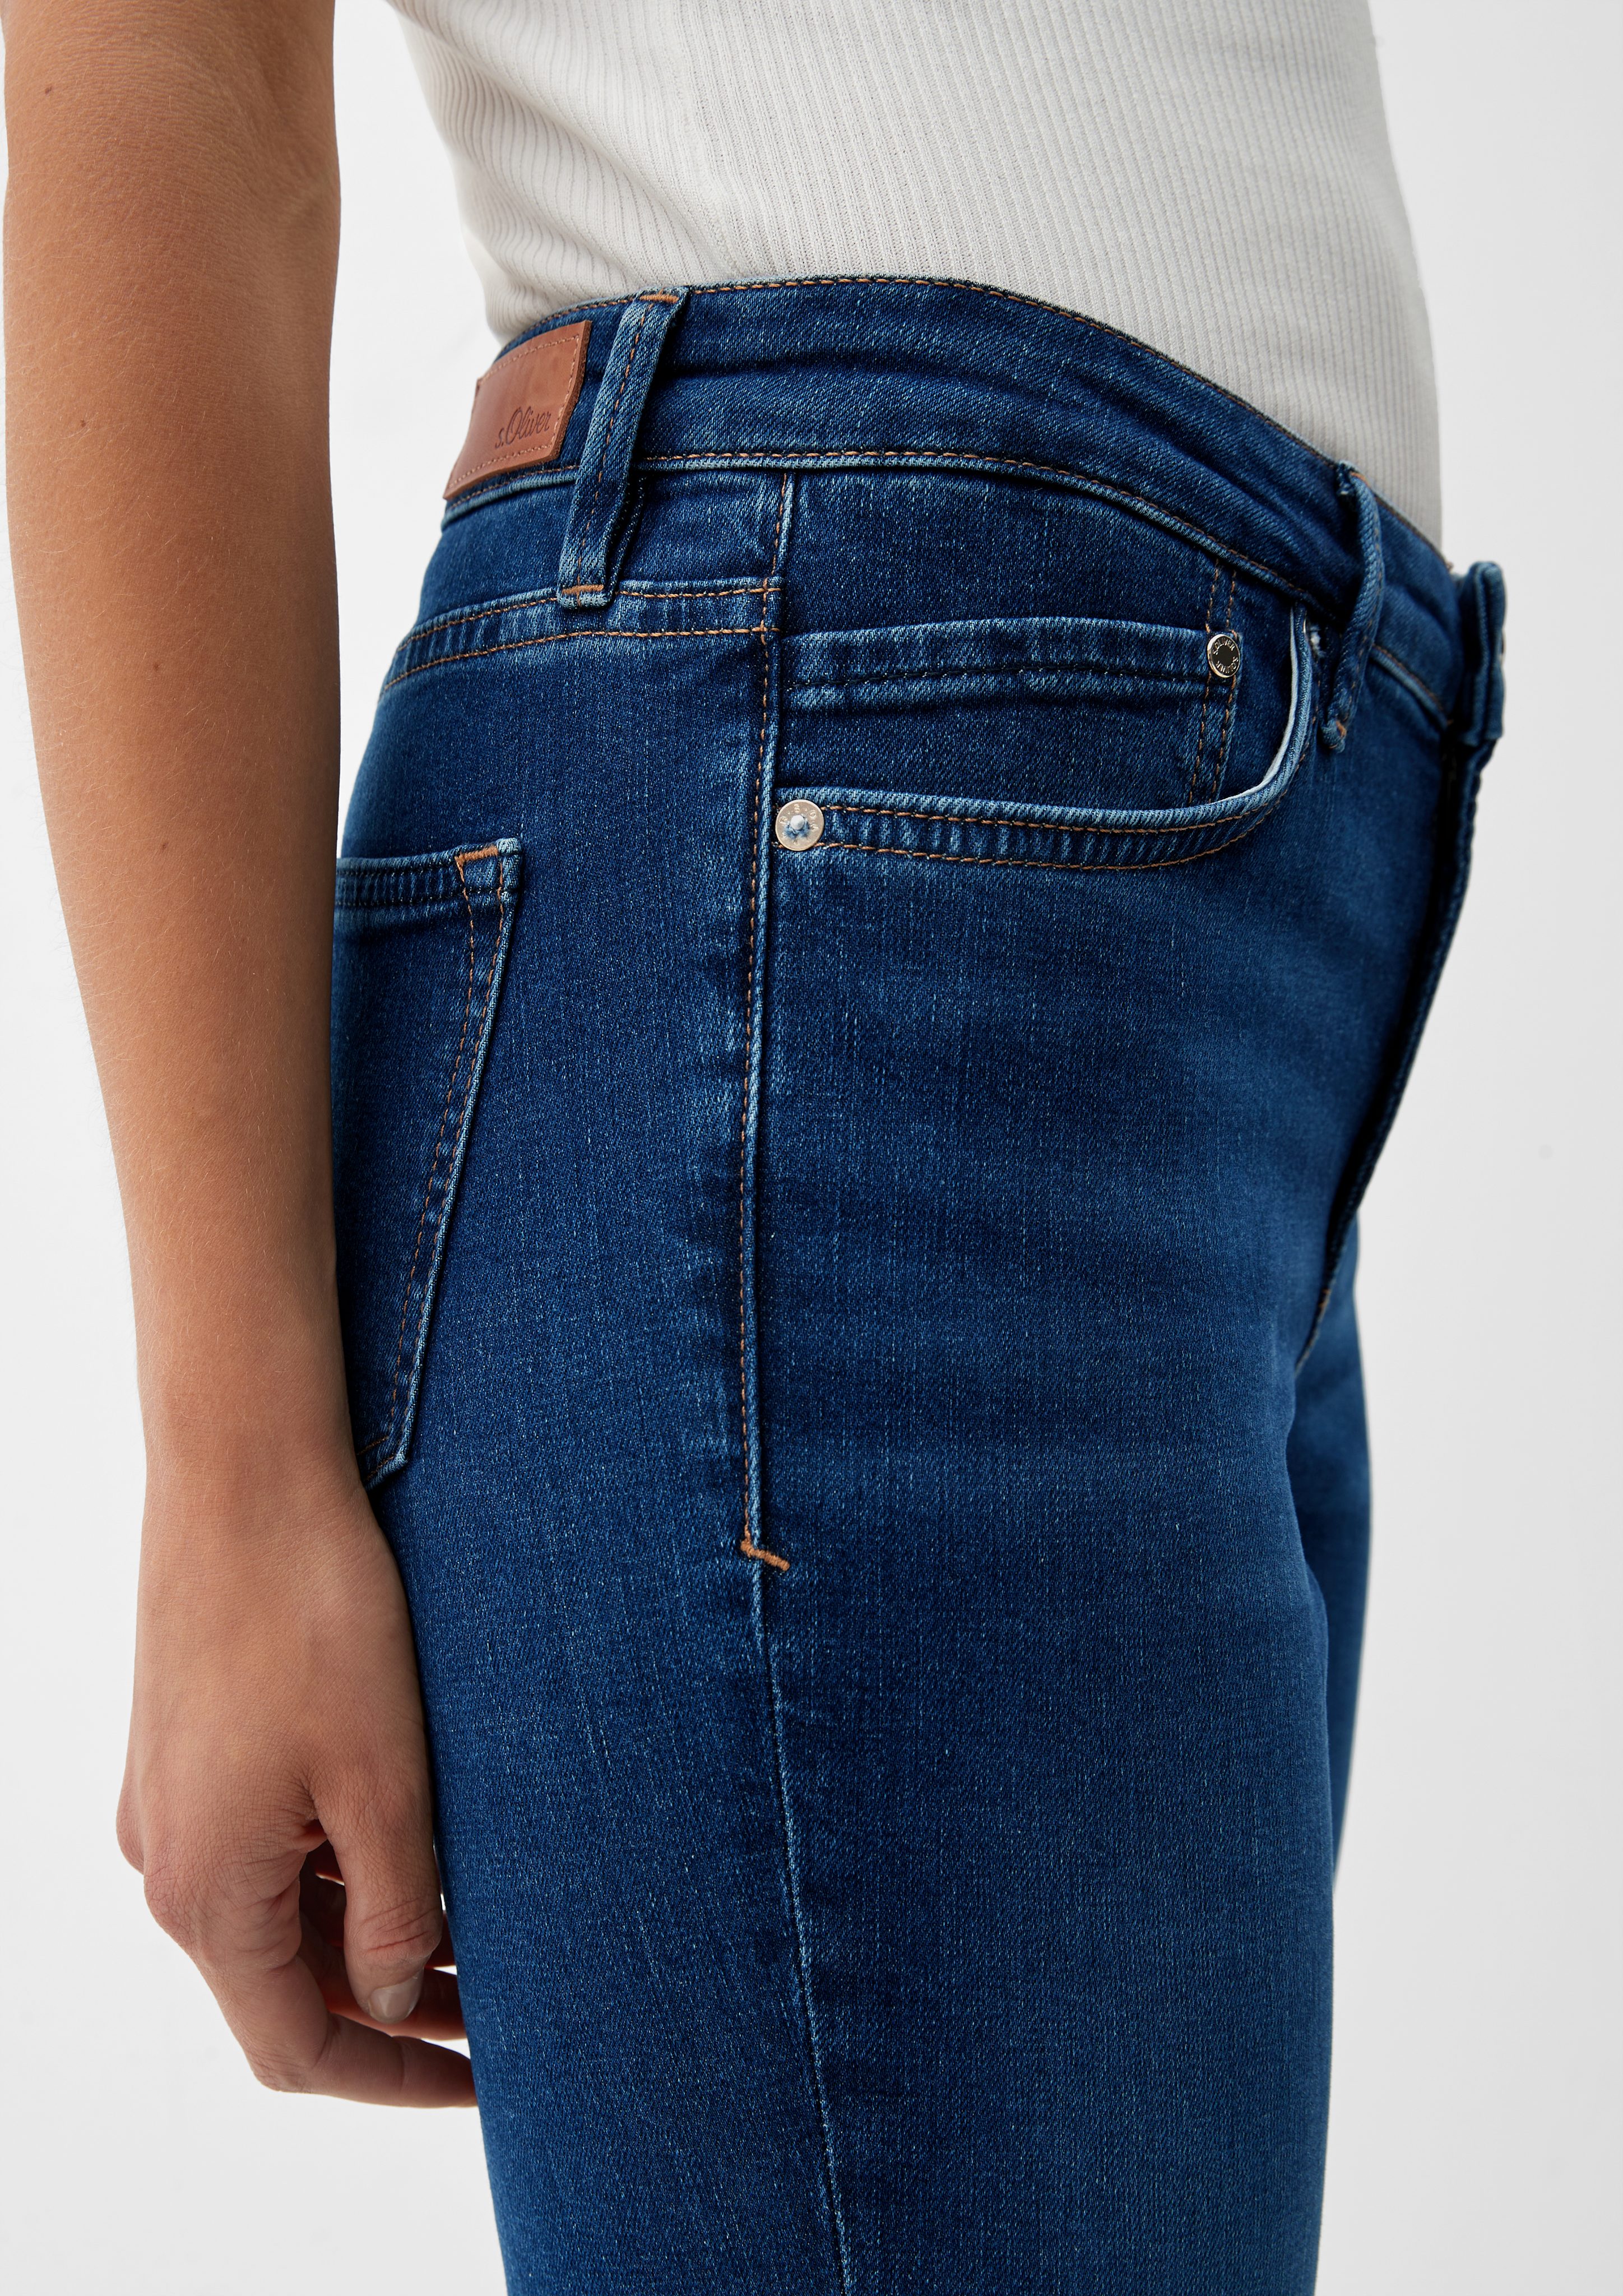 / Slim Jeans / Fit s.Oliver Leg Bootcut Mid Leder-Patch Beverly Rise 5-Pocket-Jeans /